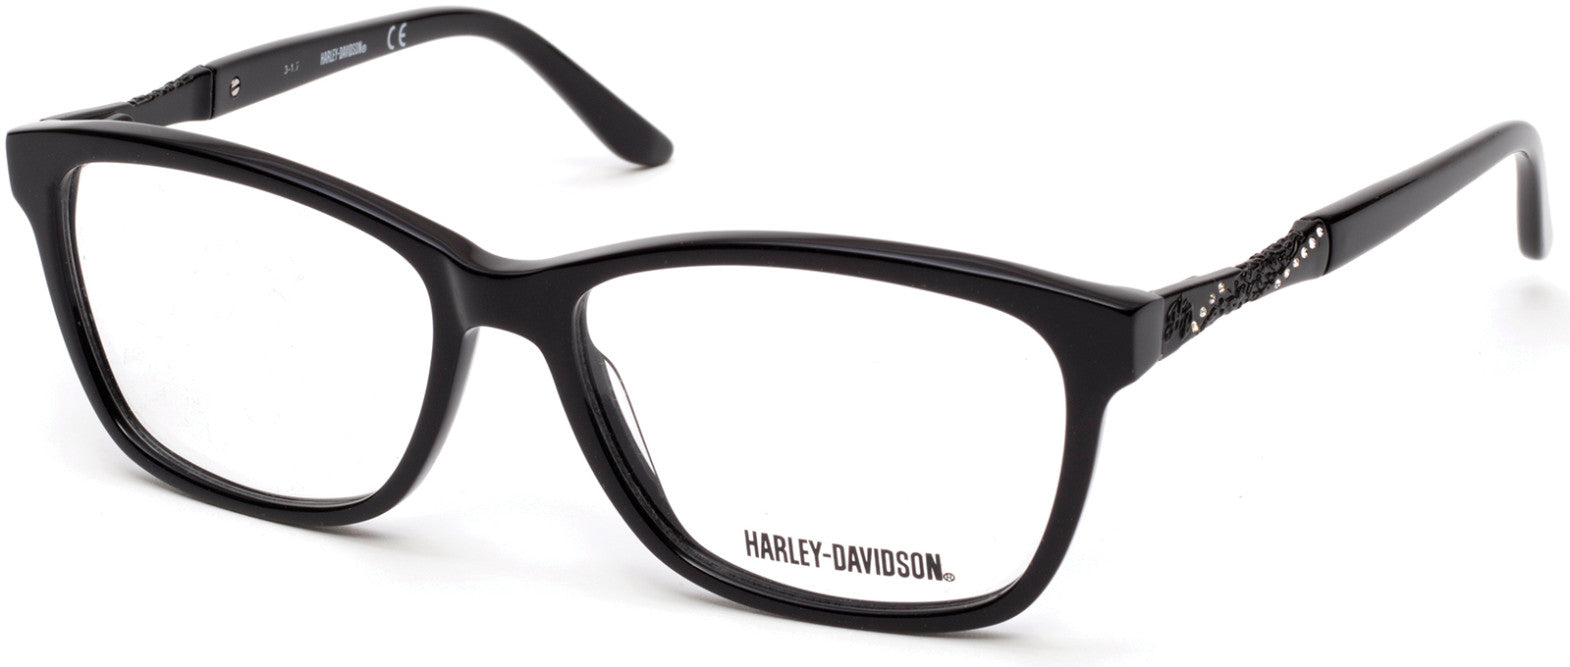 Harley-Davidson HD0542 Eyeglasses 001-001 - Shiny Black